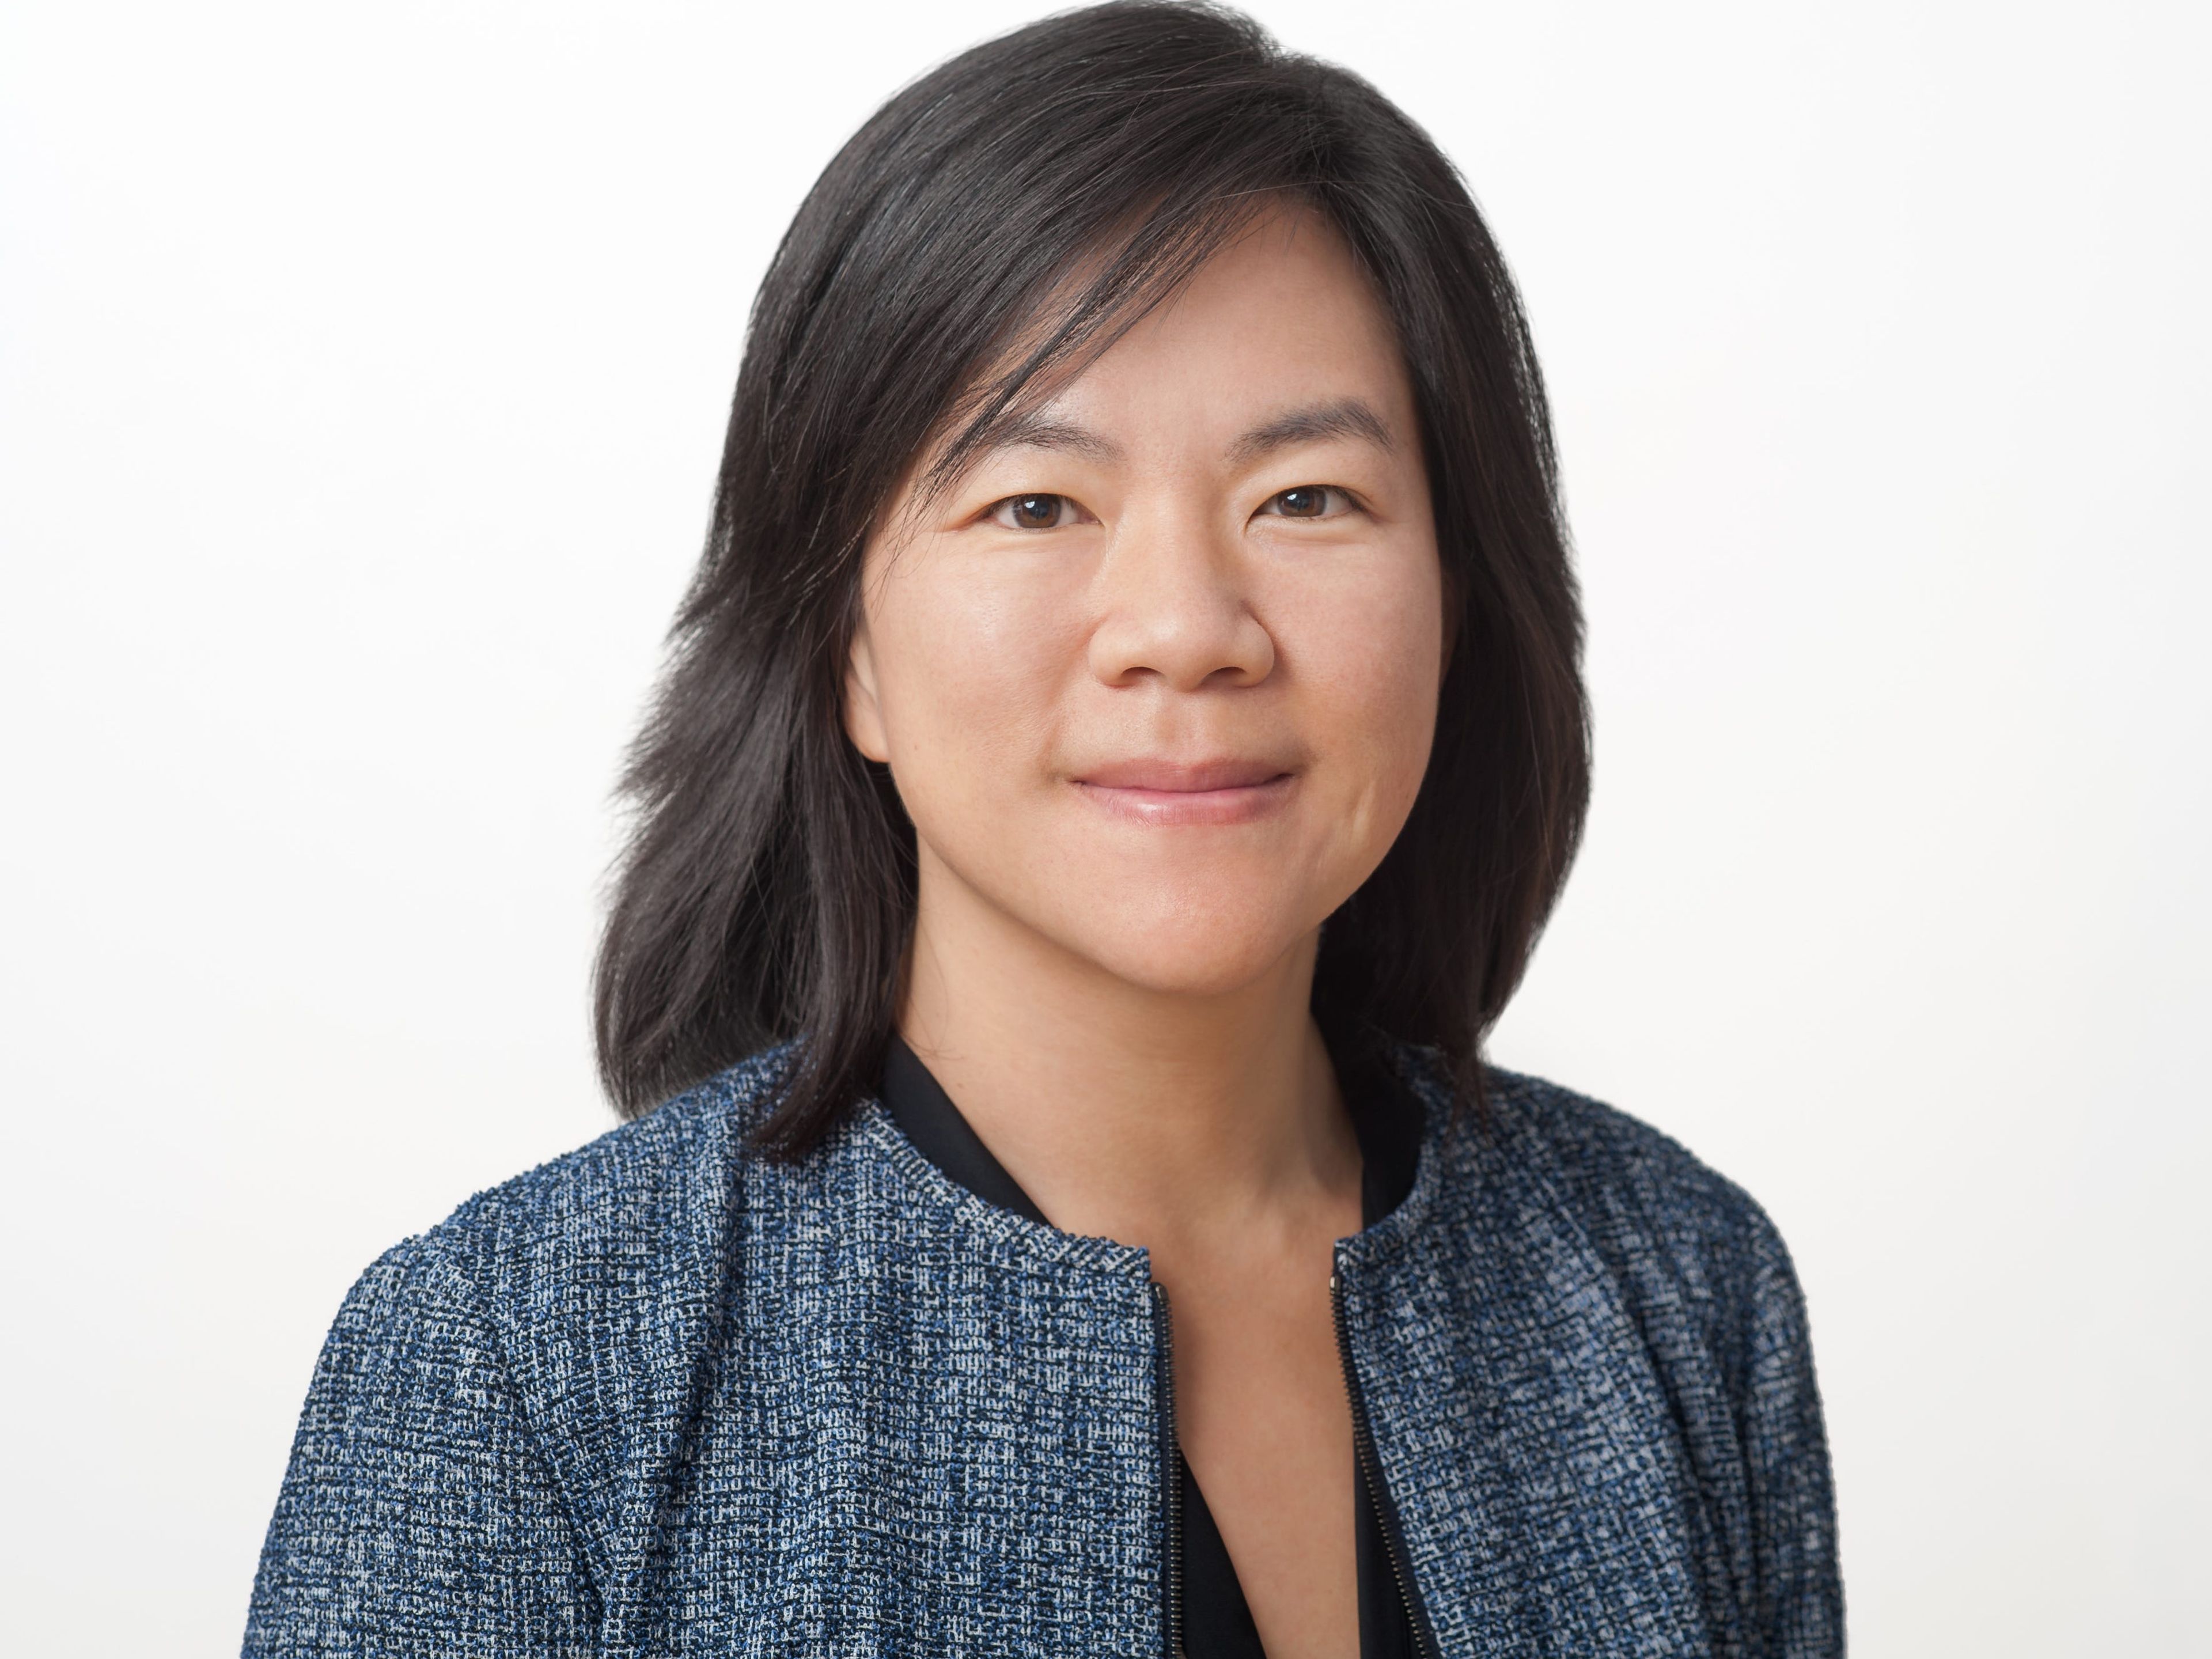 Sissie Hsiao, directora general y vicepresidenta de Google Assistant.